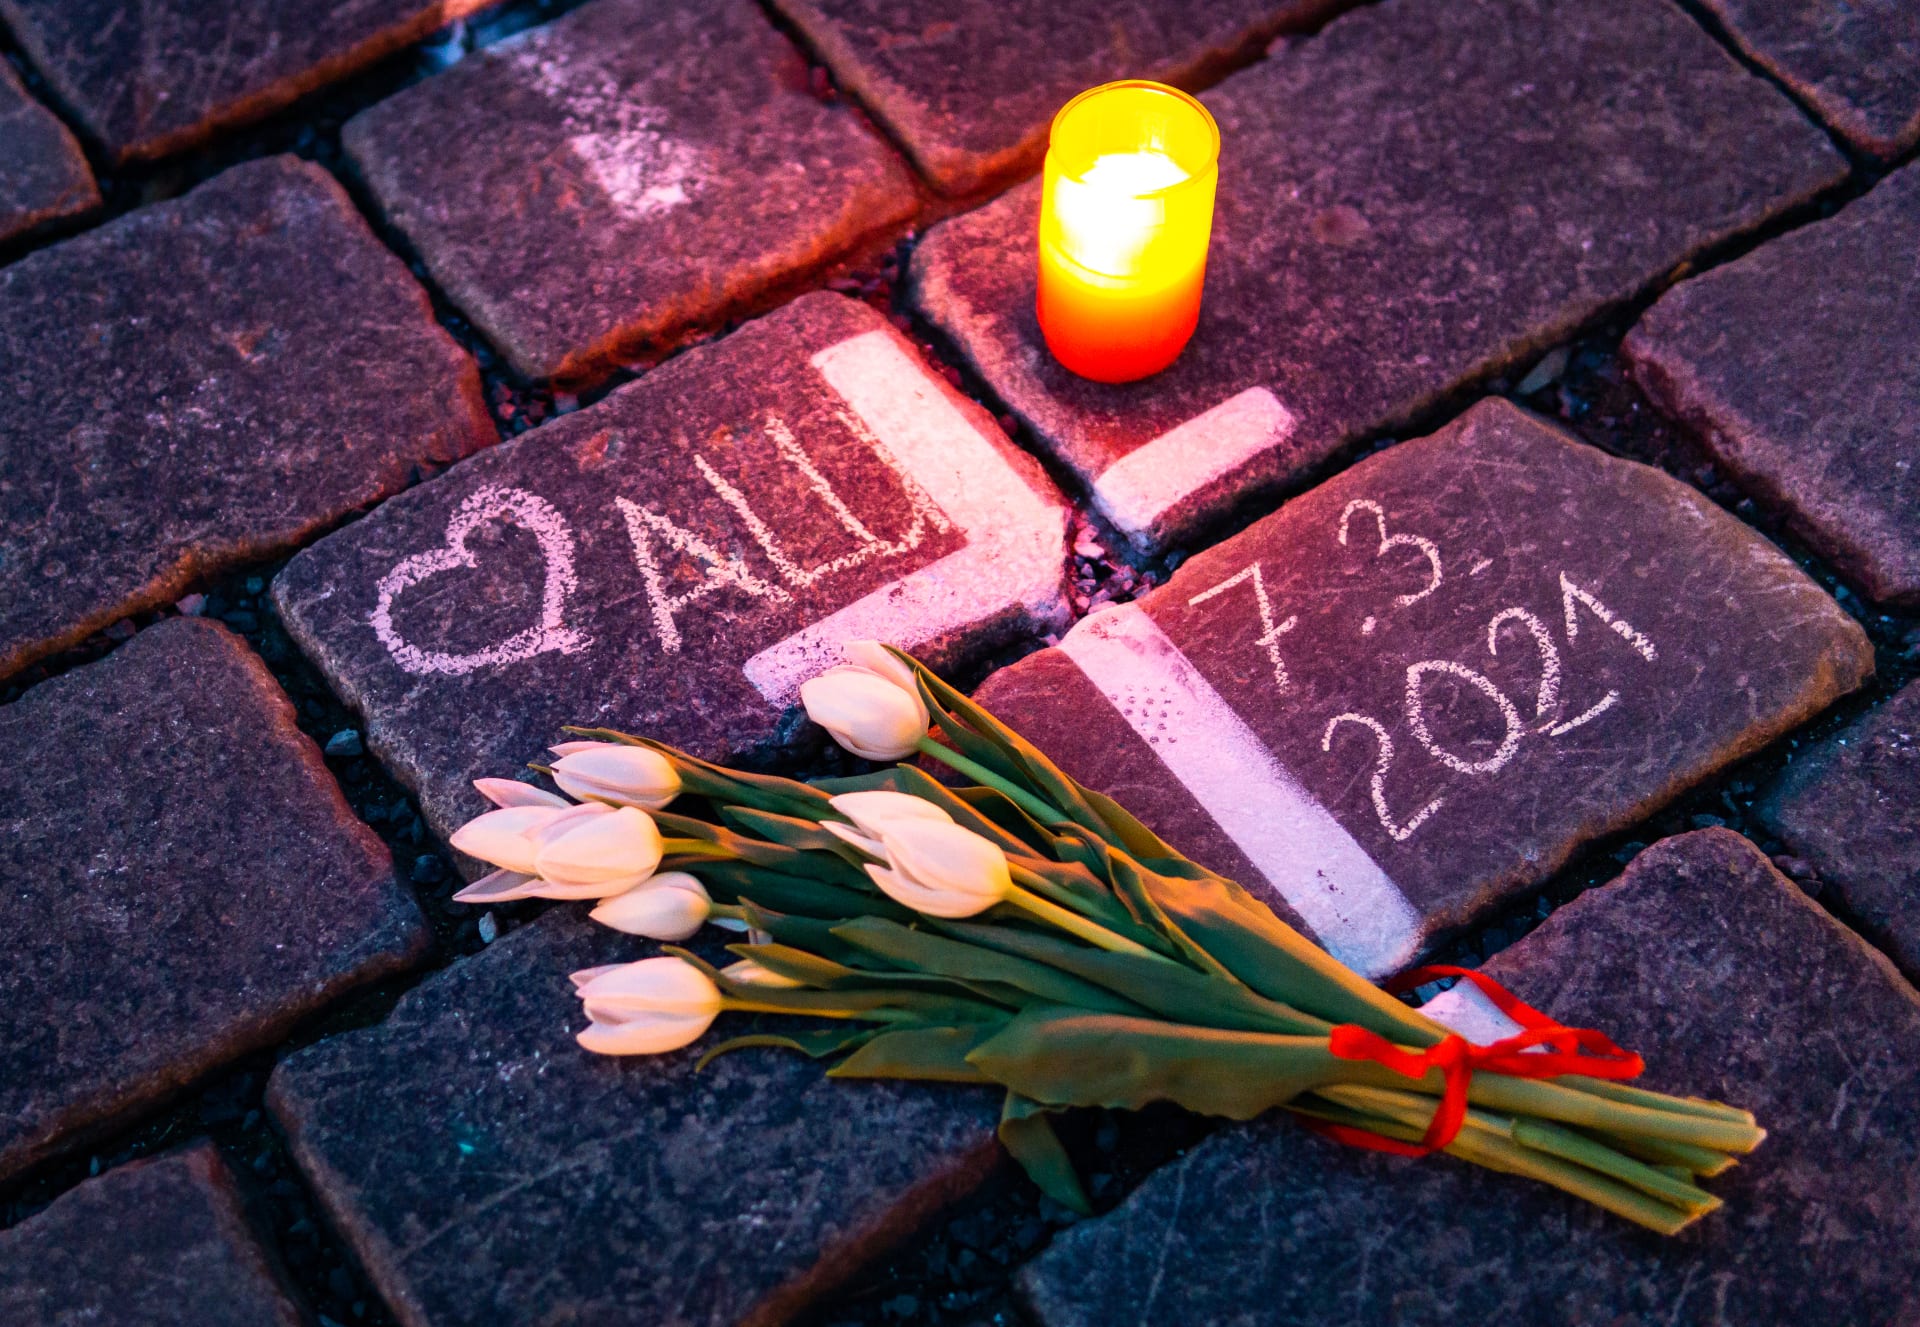 OBRAZEM: Babičko, nezapomeneme. Před rokem se v centru Prahy objevily tisíce křížů